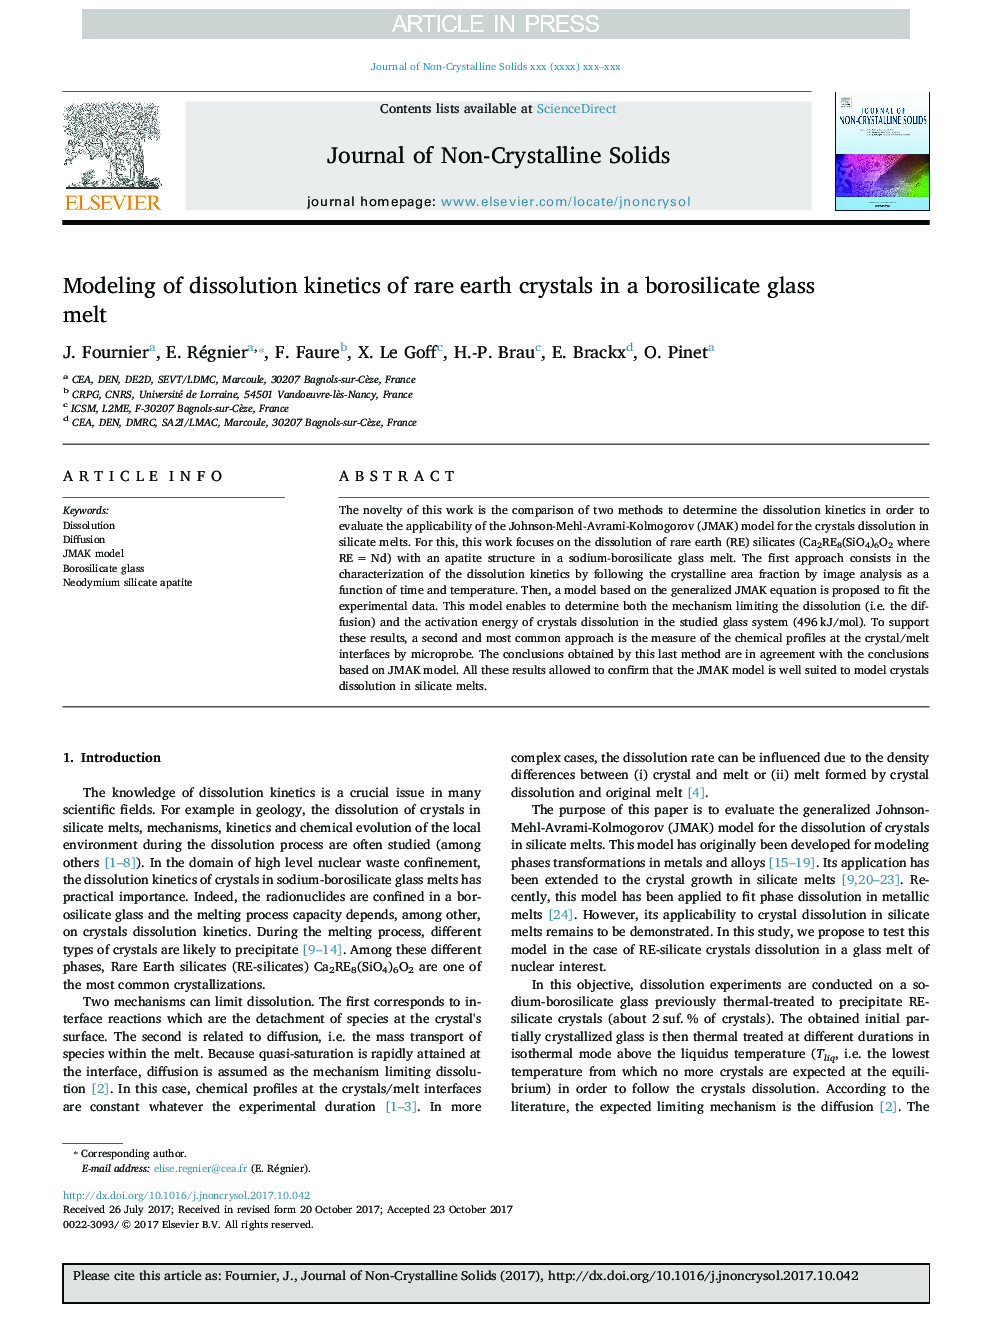 مدل سازی سینتیک انحلال کریستال های خاکی کمیاب در یک ذوب شیشه بوروسیلیکات 